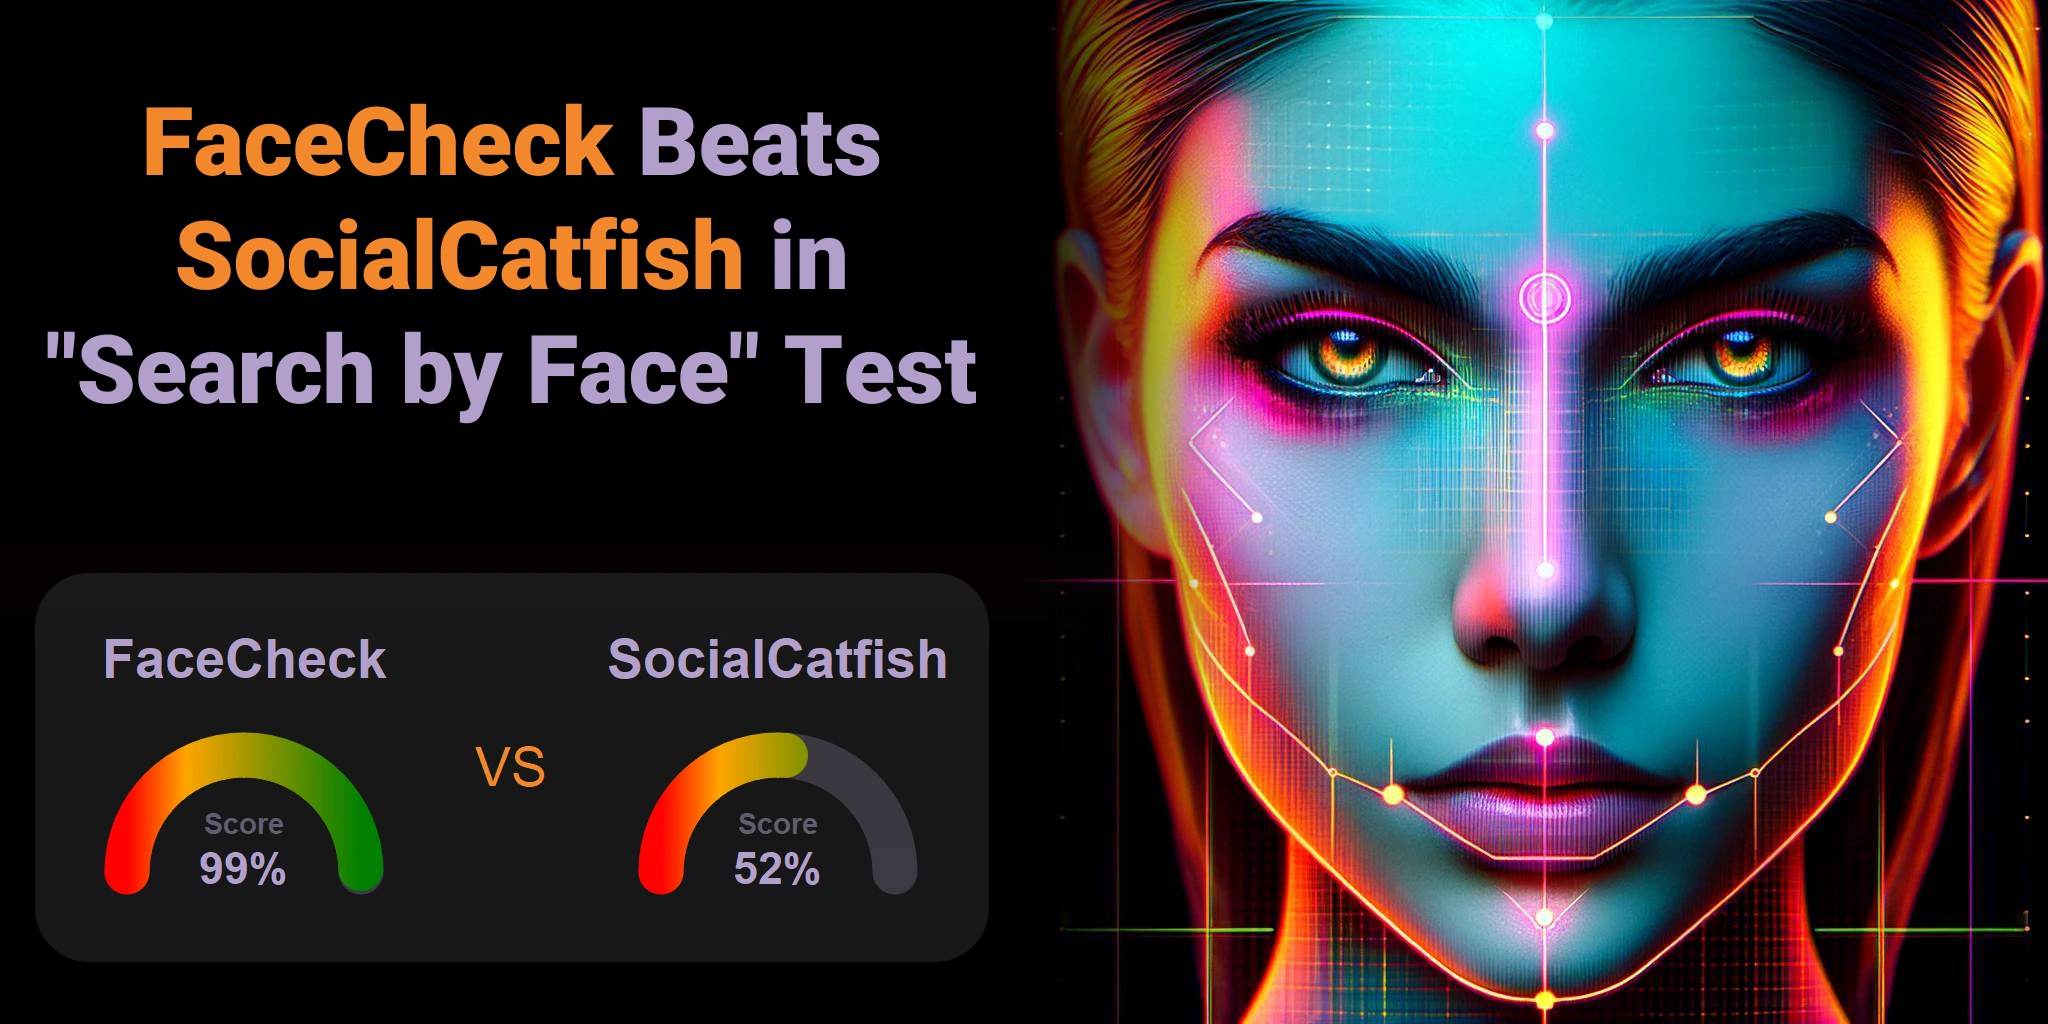 FaceCheck.ID vs SocialCatfish.com